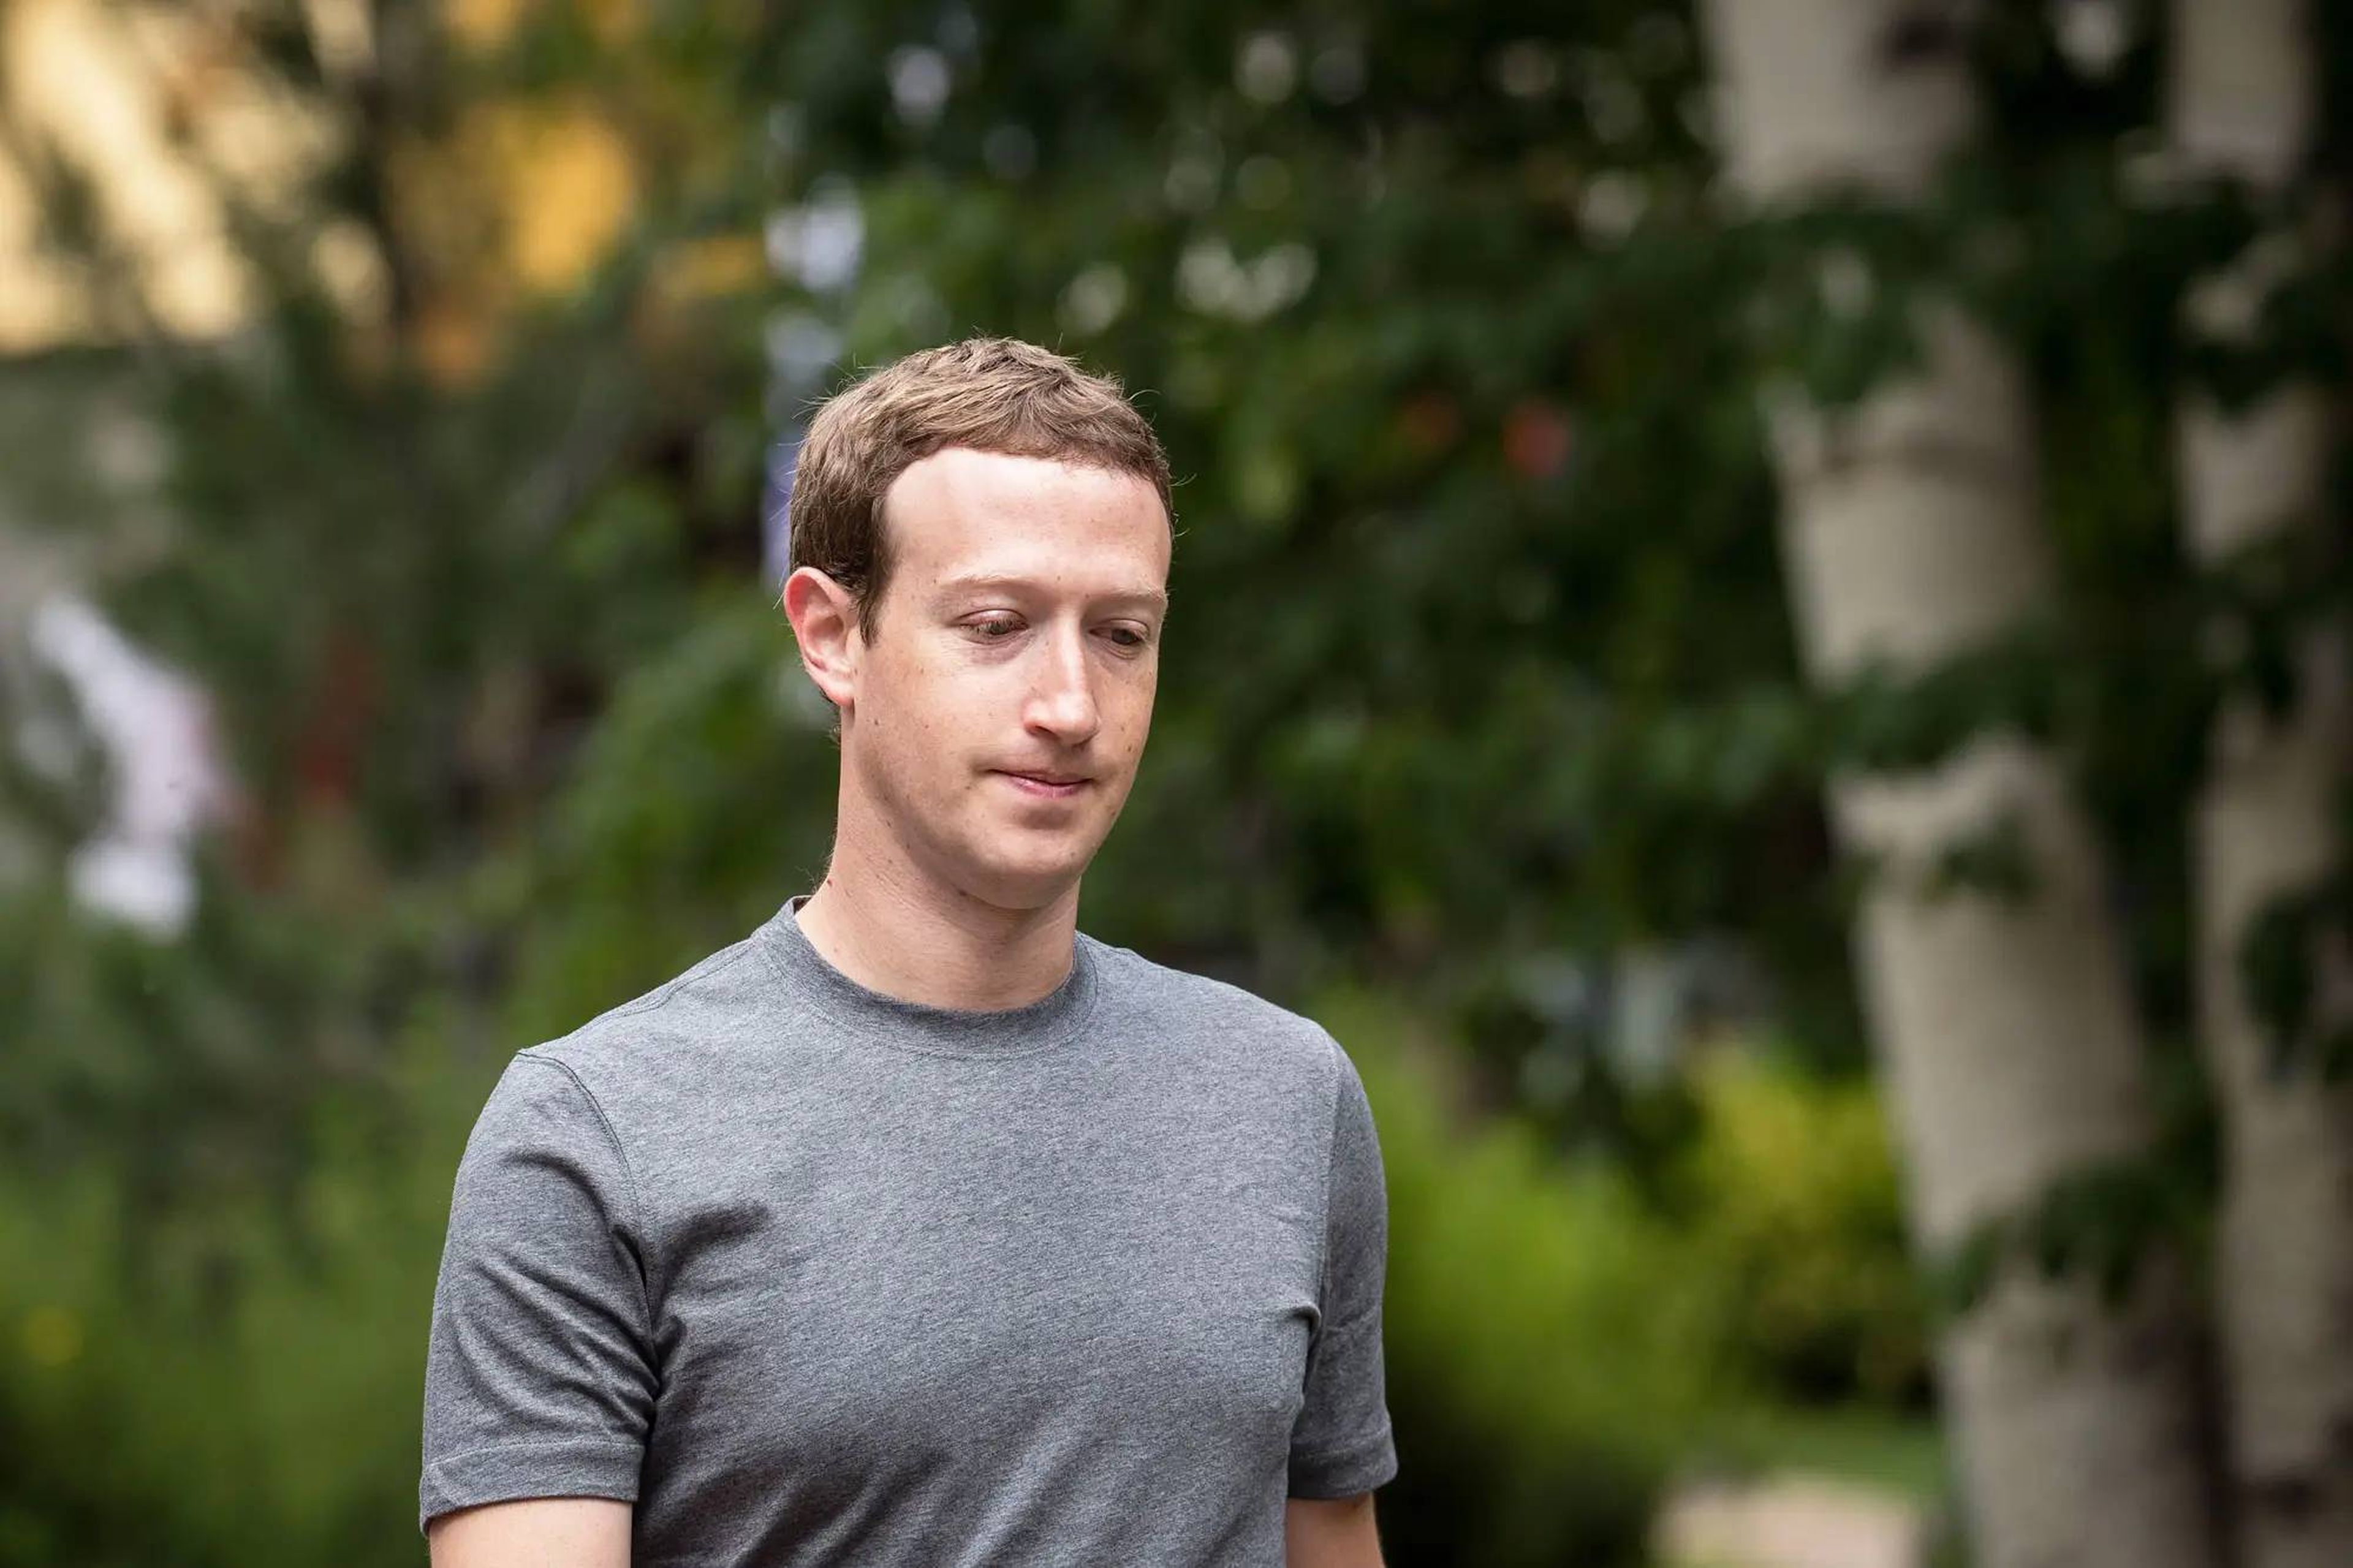 Facebook registró un descenso de usuarios activos diarios a finales de 2021.